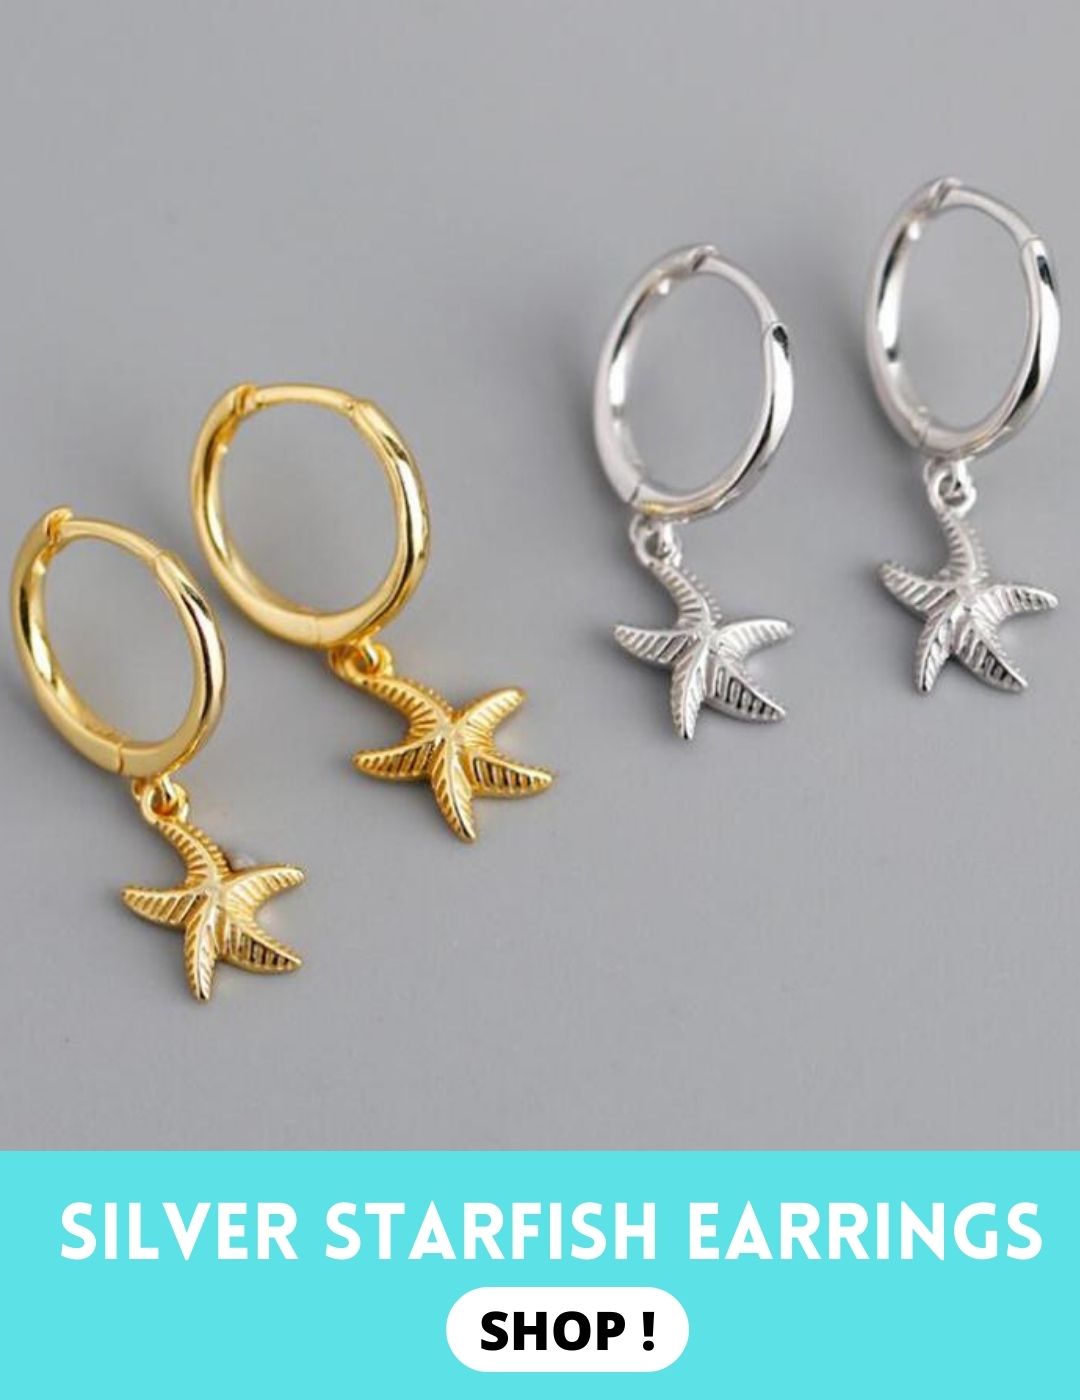 Beautiful starfish earrings